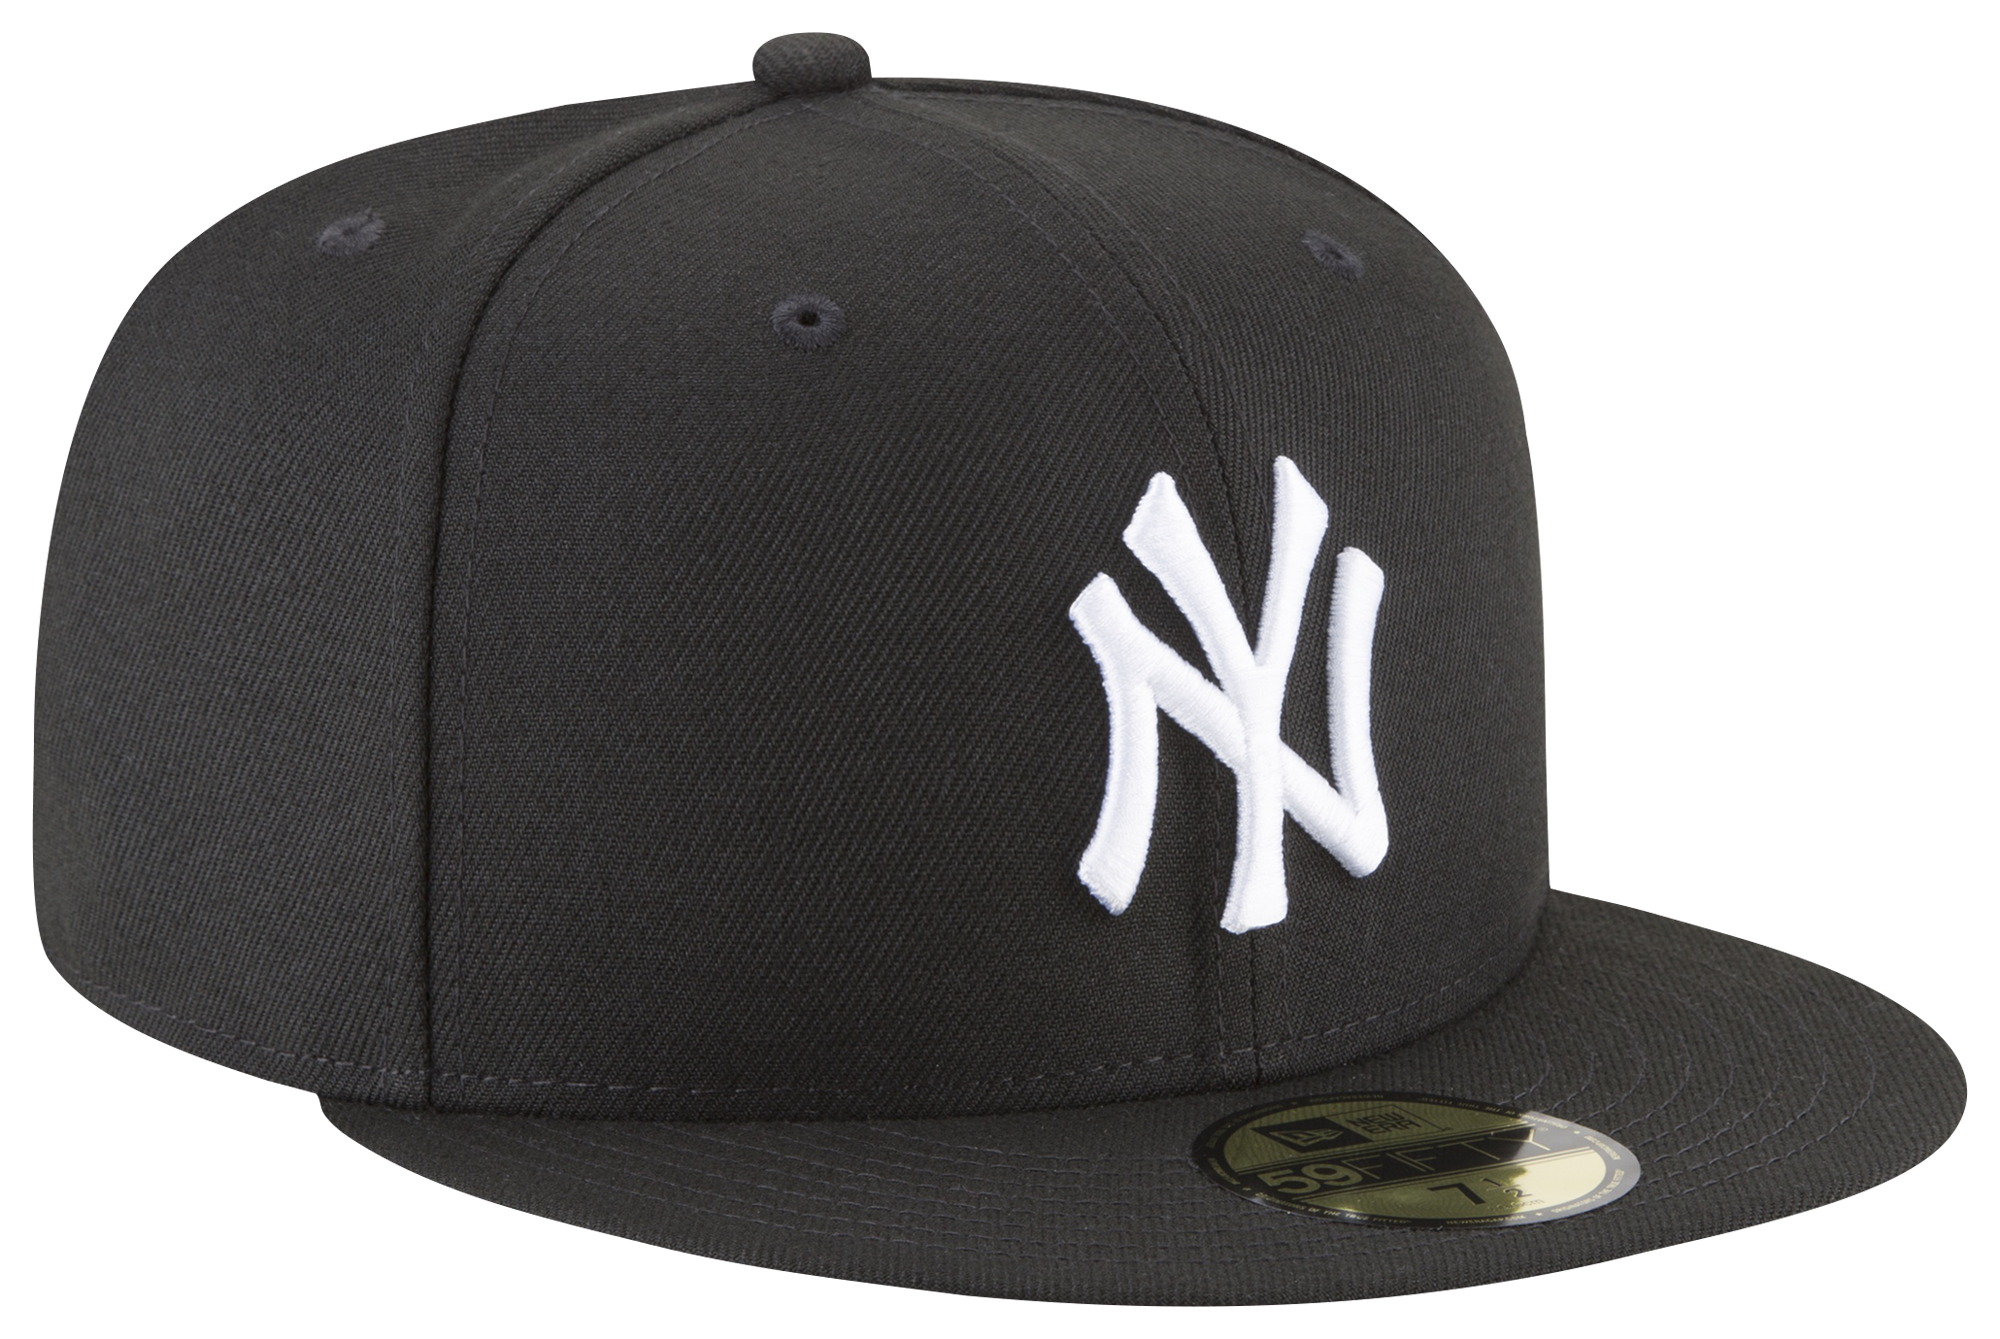 New Era Yankees 59Fifty Cap